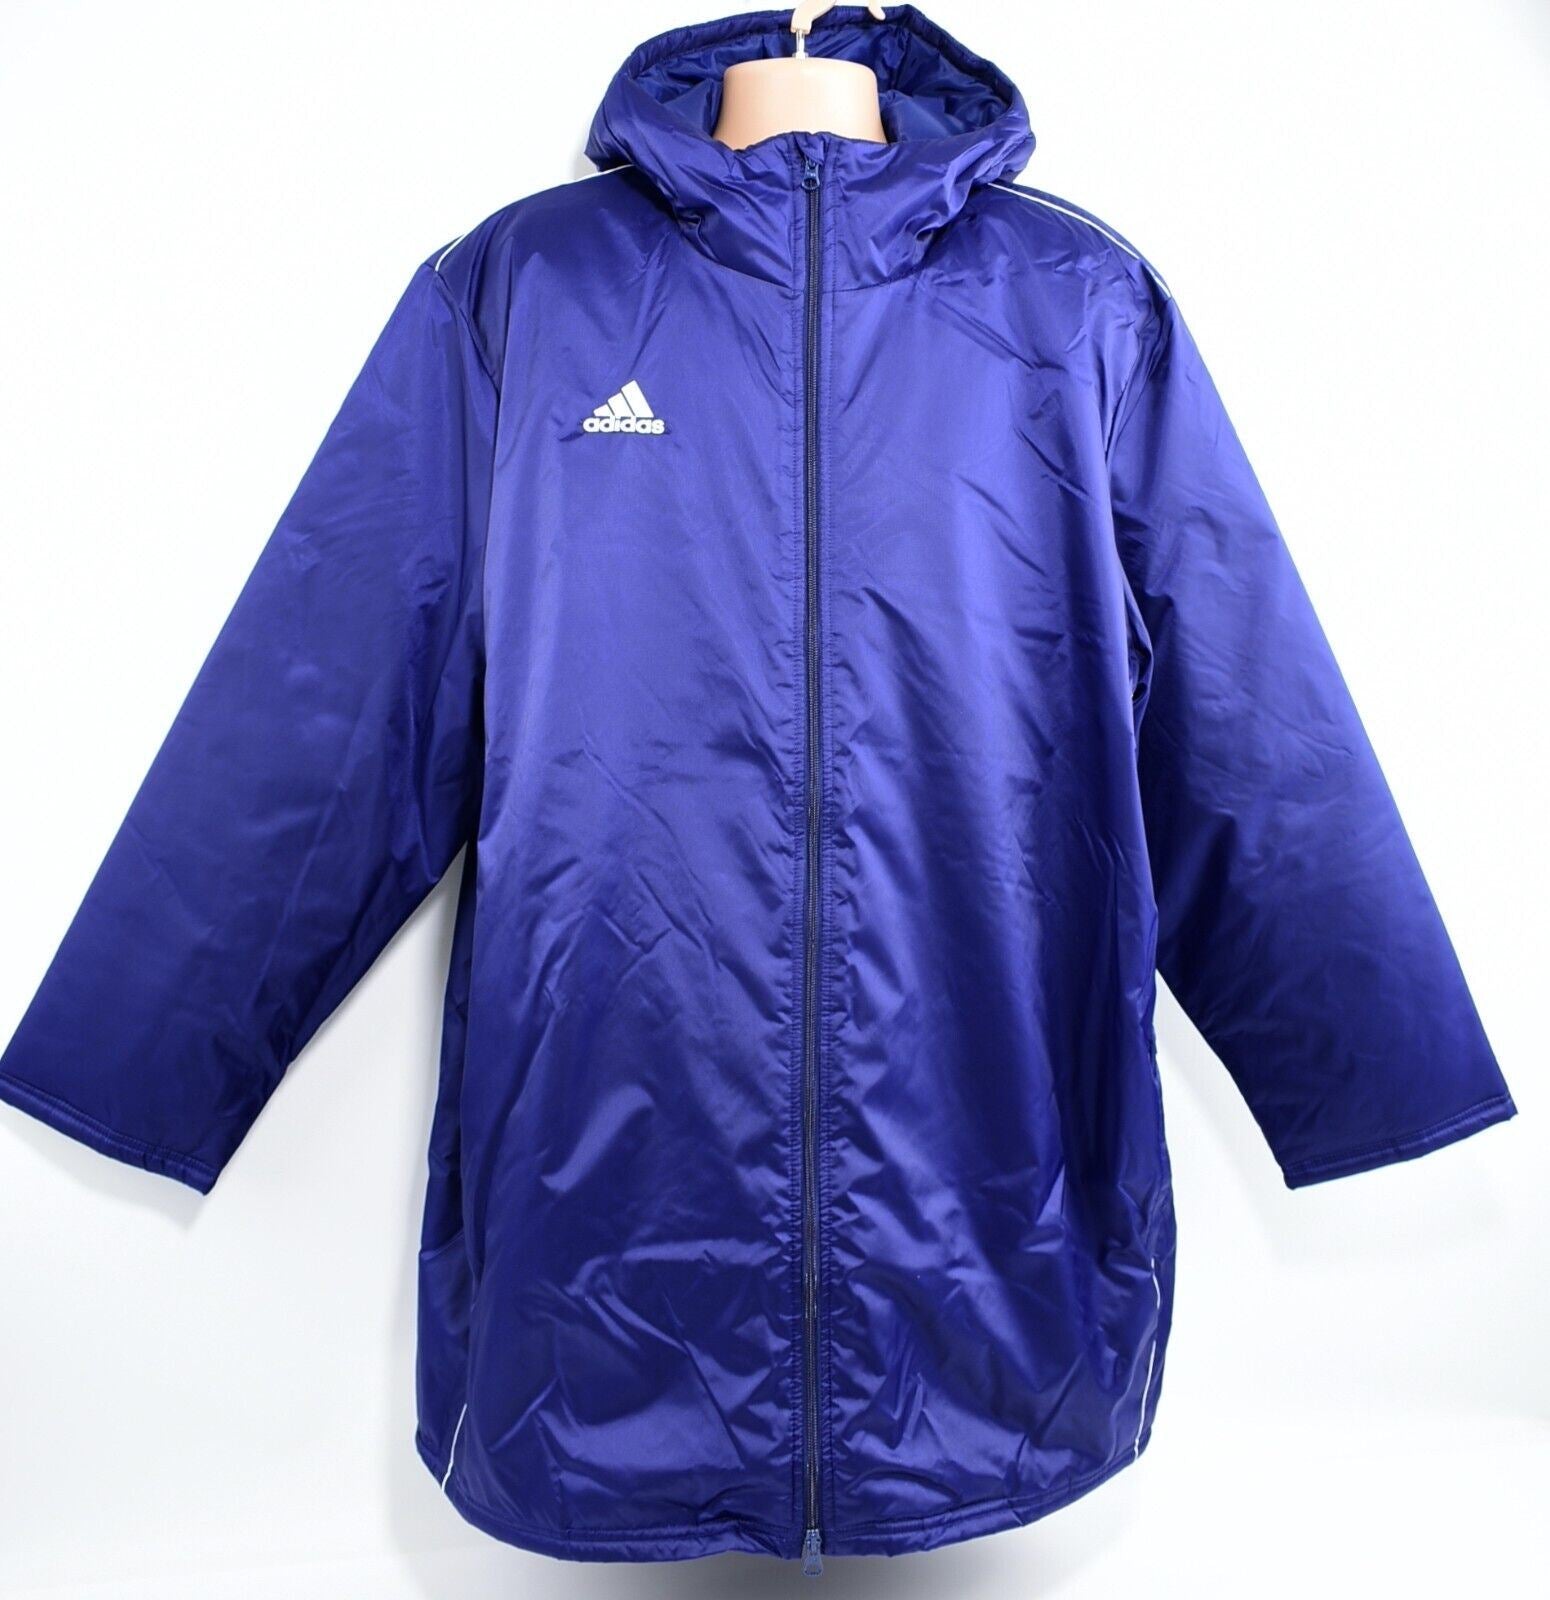 ADIDAS Men's Core 18 Stadium Jacket, Warm Padded Coat, Blue, size XL